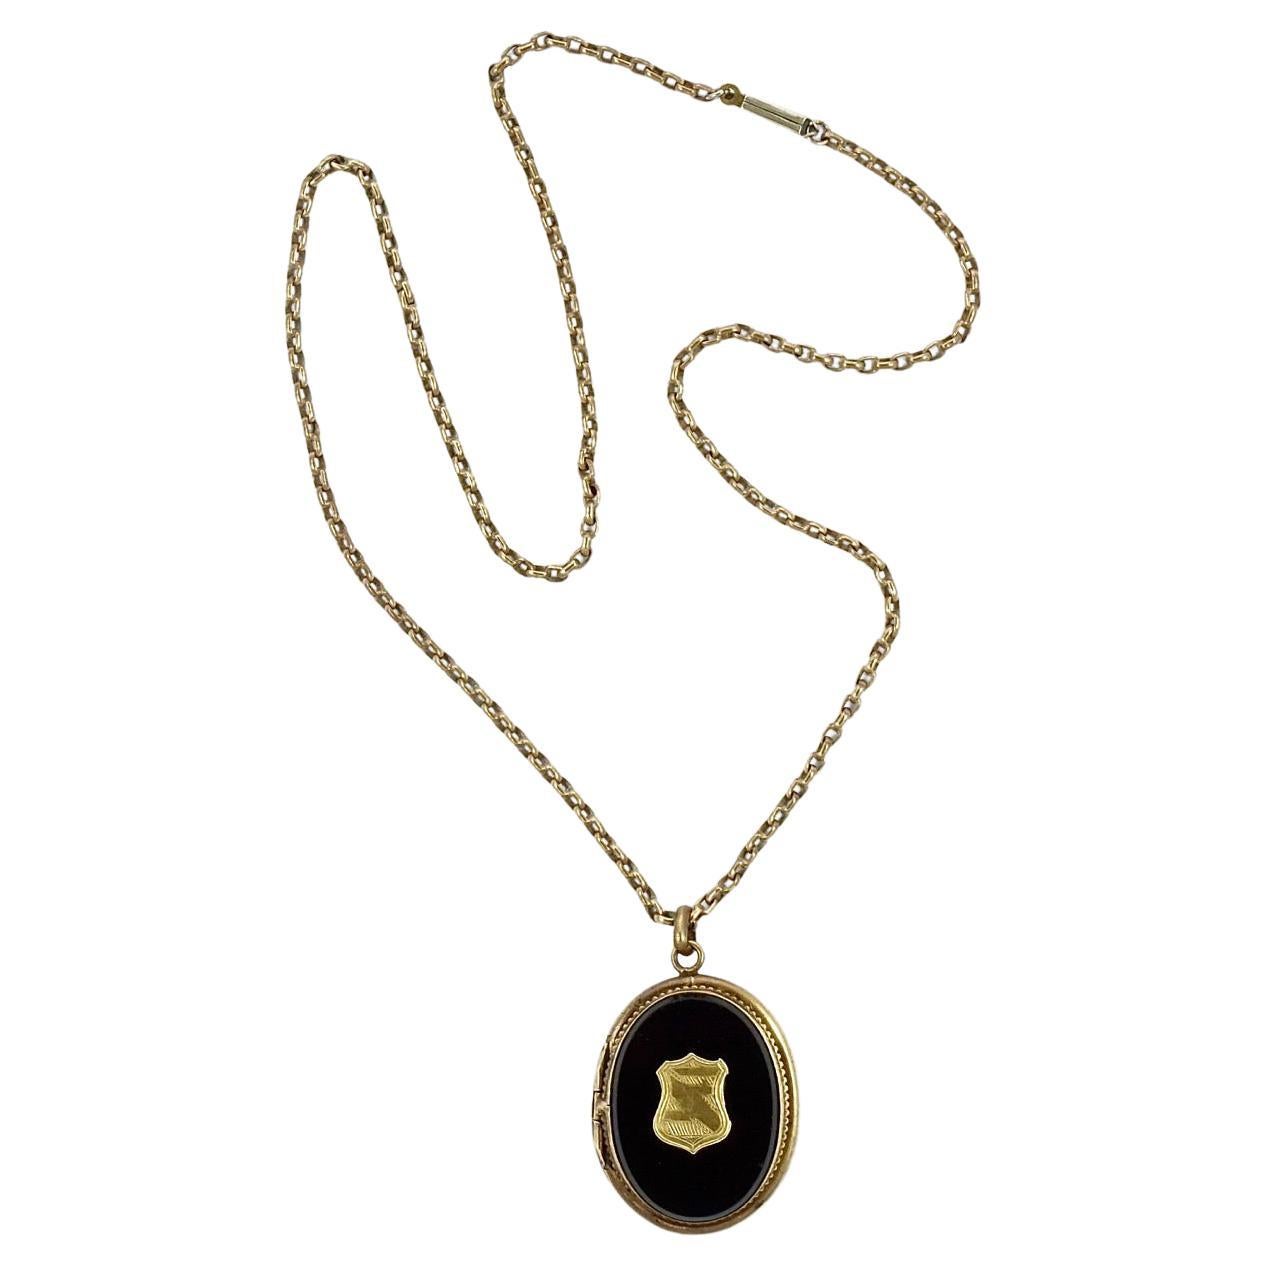 Antique médaillon de deuil de deuil français plaqué or de style victorien avec chaîne Belcher